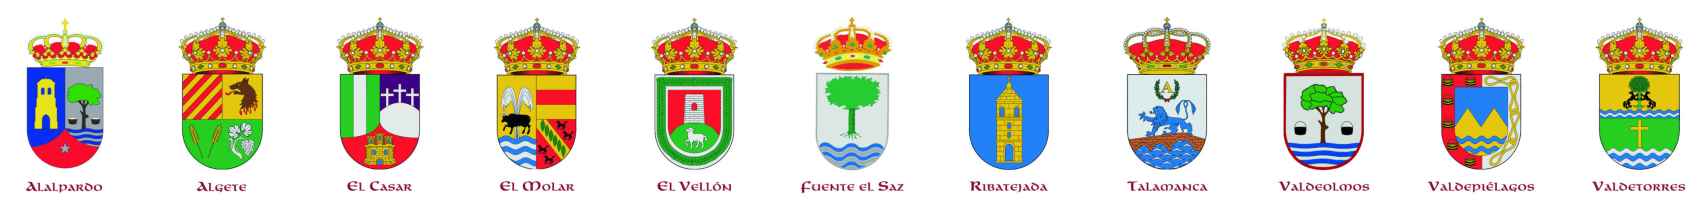 Escudos de los municipios pertenecientes al Fuero de Talamanca.